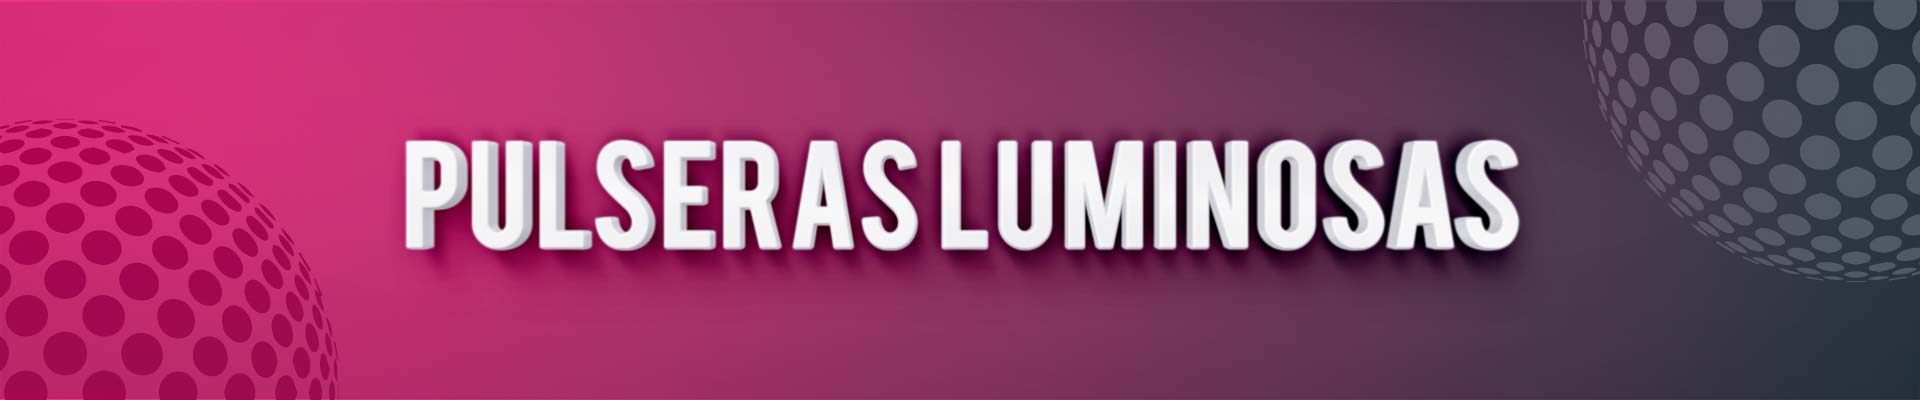 Pulseras luminosas personalizadas, estampación y marketing -  PulserasLuminosasFluor